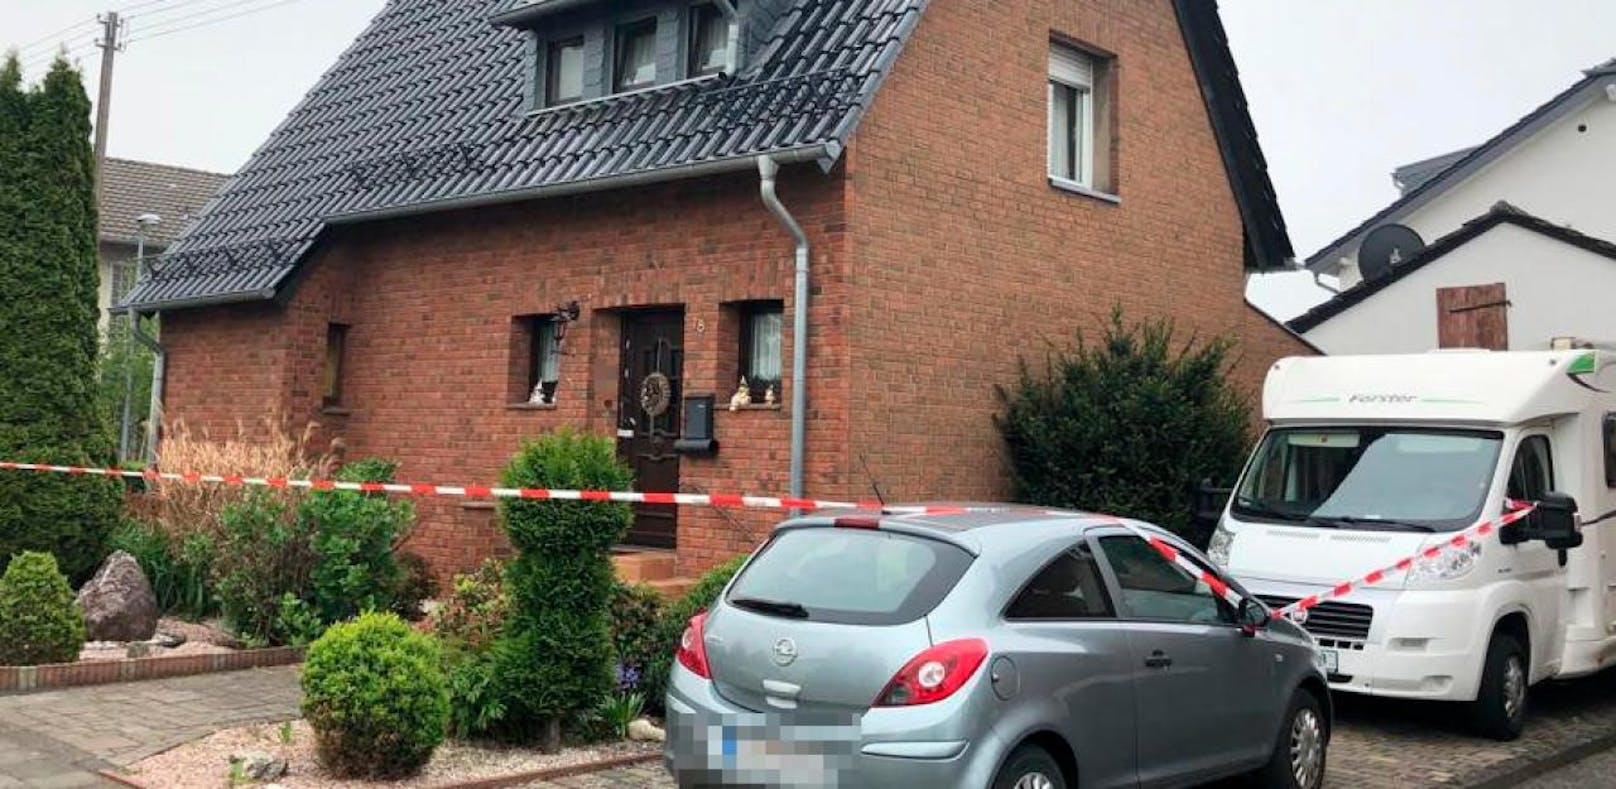 In diesem Haus in Swisttal-Weilerswist geschah die Bluttat: Sohn erstach Vater und Mutter.